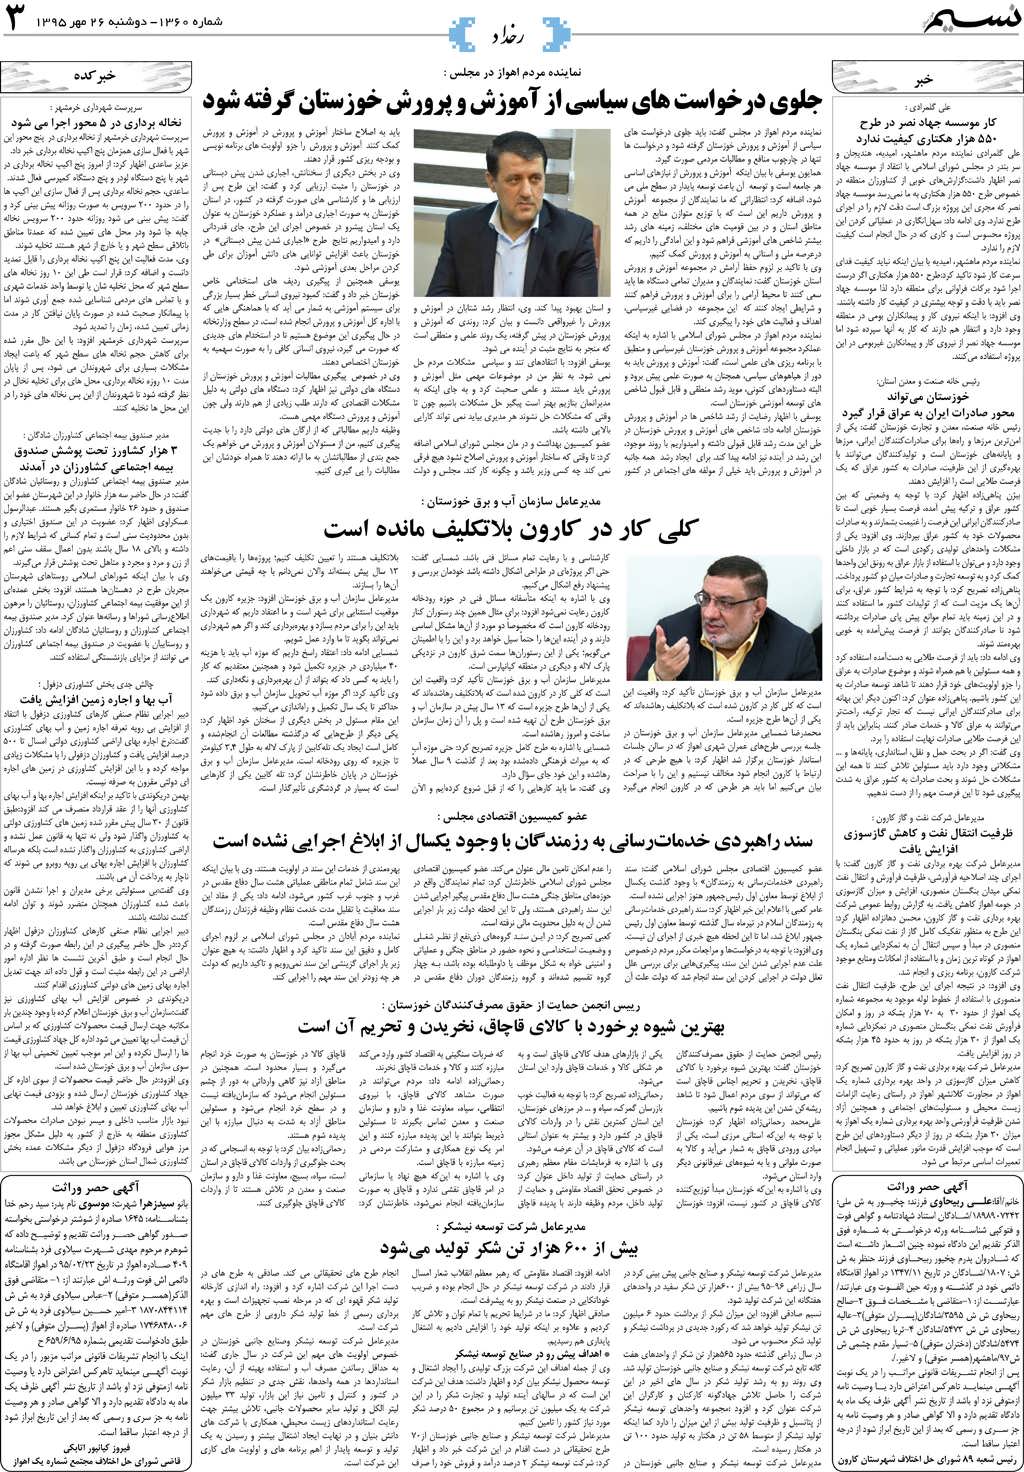 صفحه رخداد روزنامه نسیم شماره 1360